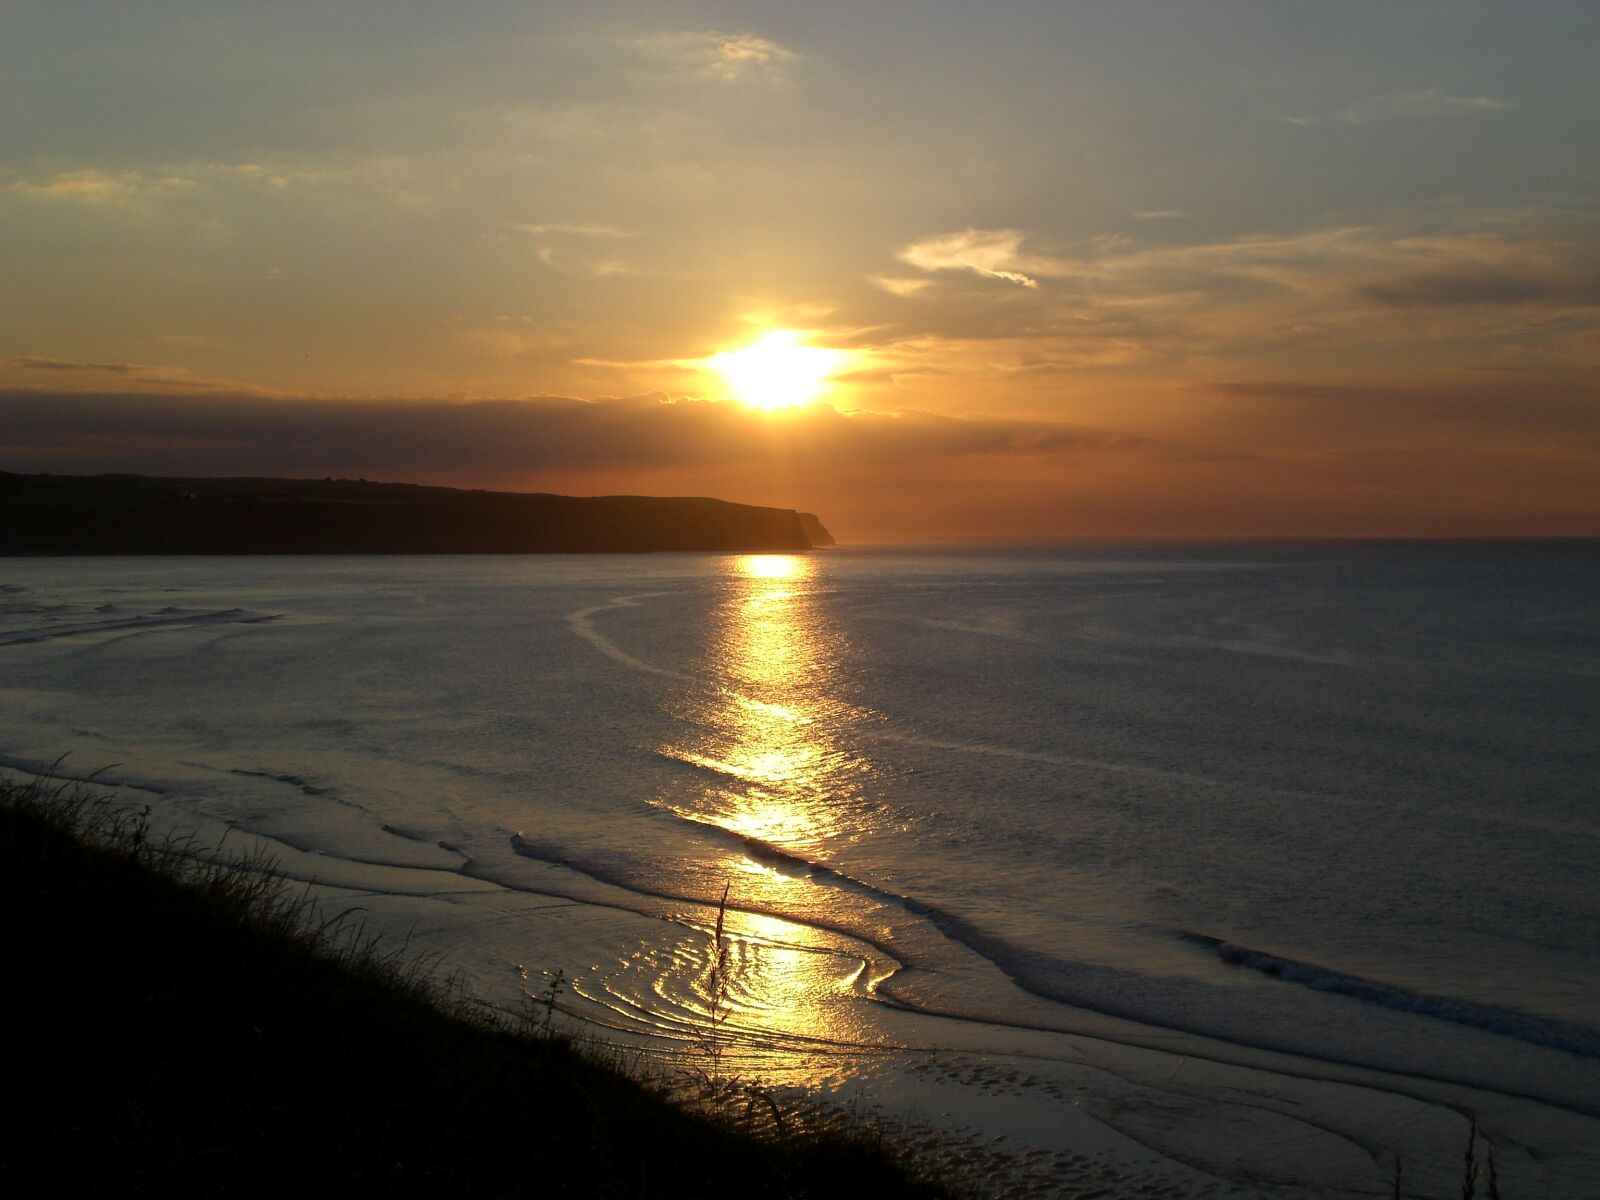 CASIO EX-Z75 sample photo. Seaside, sunset, coast photography